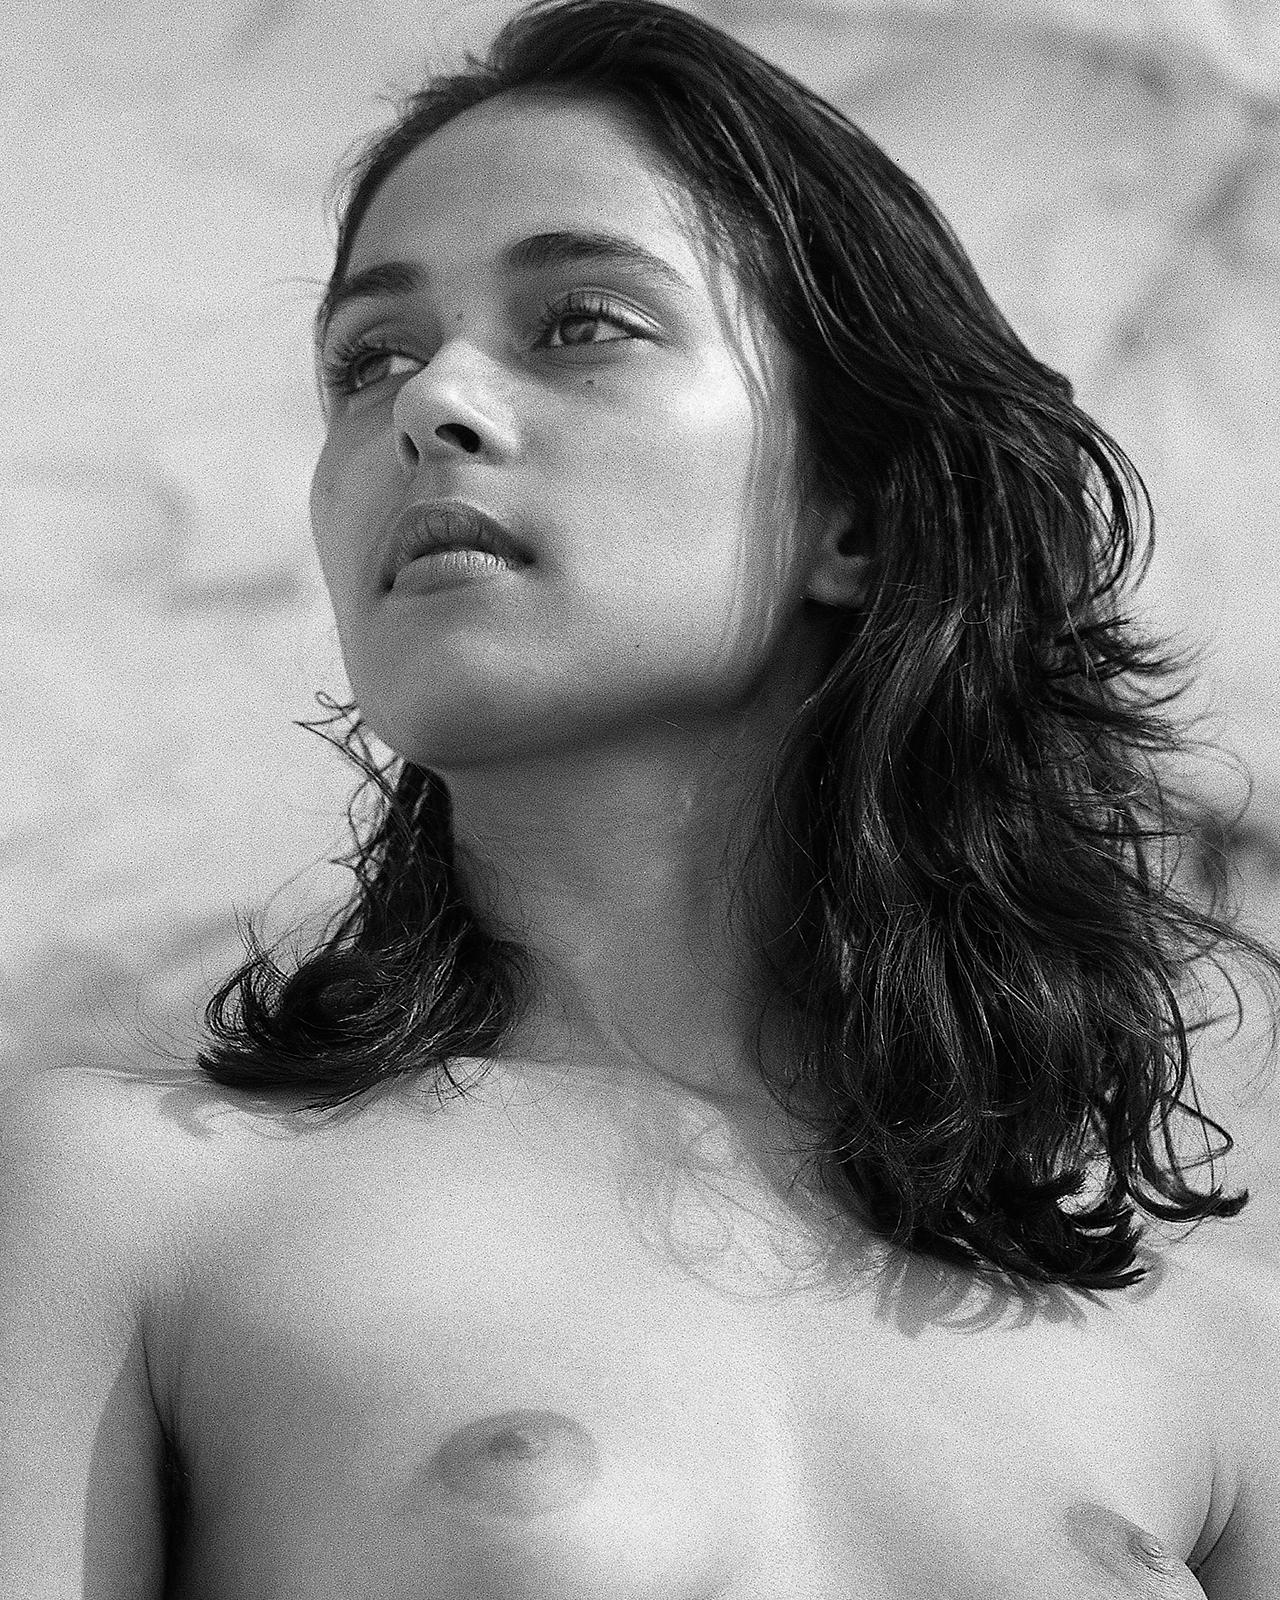 Zarina – signierter Aktdruck in limitierter Auflage, schwarz-weißes Foto, ungewöhnliches Modell – Photograph von Ian Sanderson